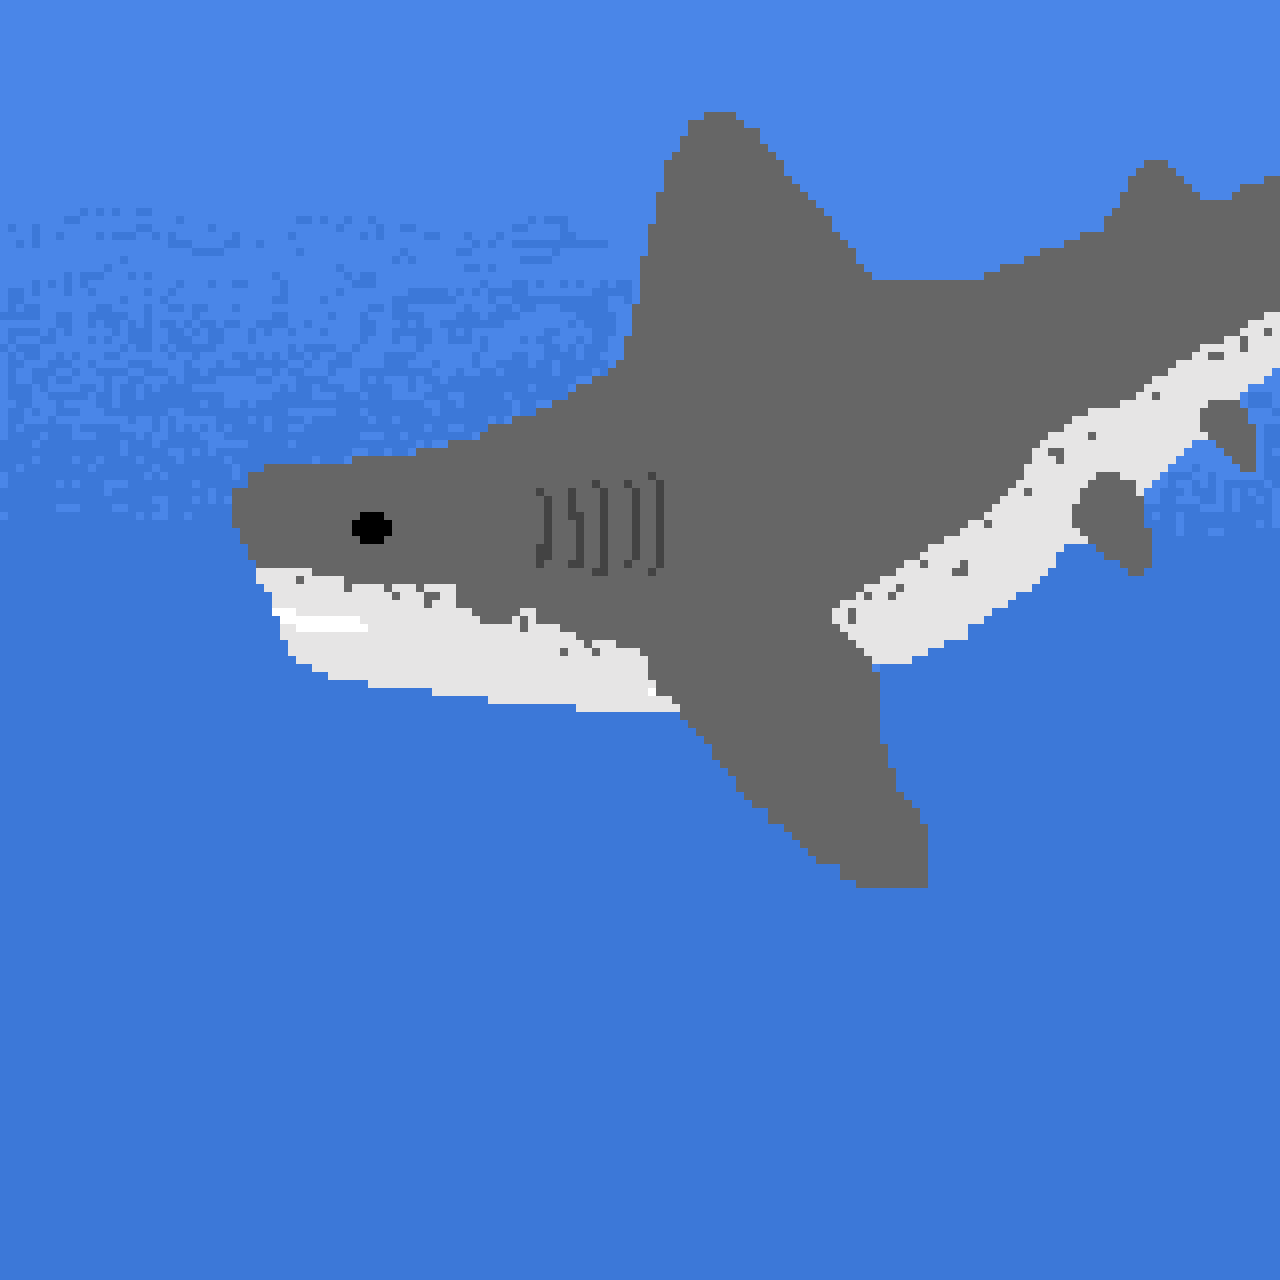 Shark in water